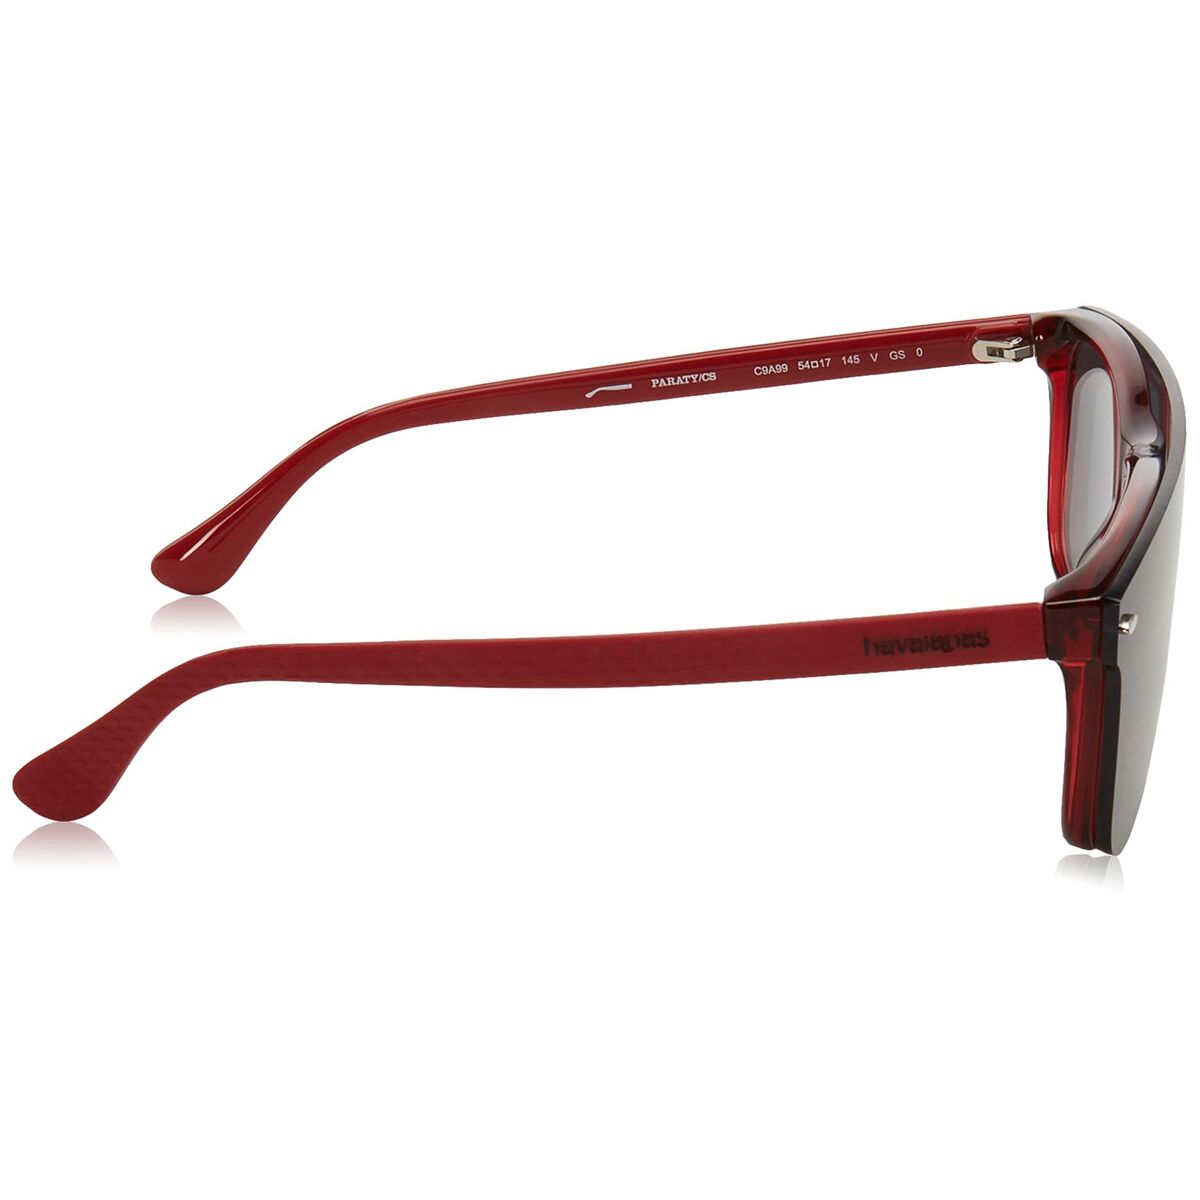 Herrensonnenbrille Havaianas PARATY/CS Rot ø 54 mm